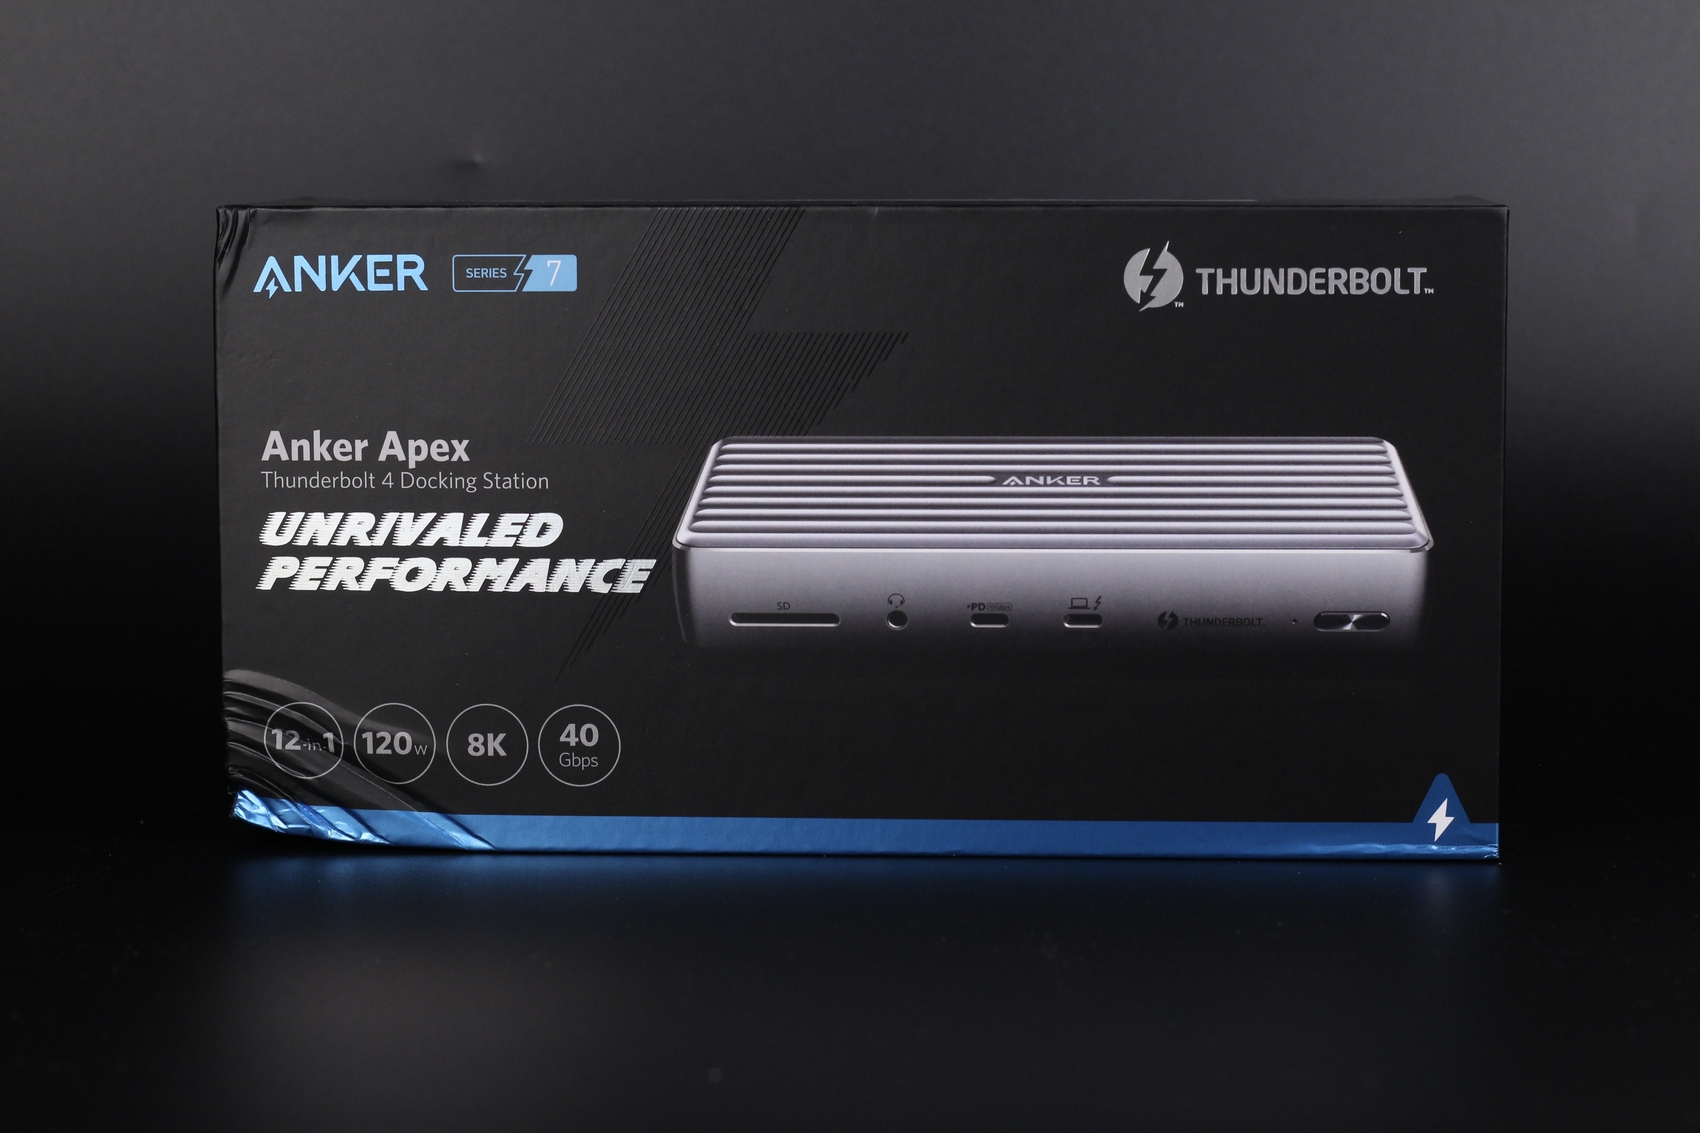 Anker Apex Review Thunderbolt 4 Docking Station Packaging1 | Anker Apex Review: 12-in-1 Thunderbolt 4 Dock